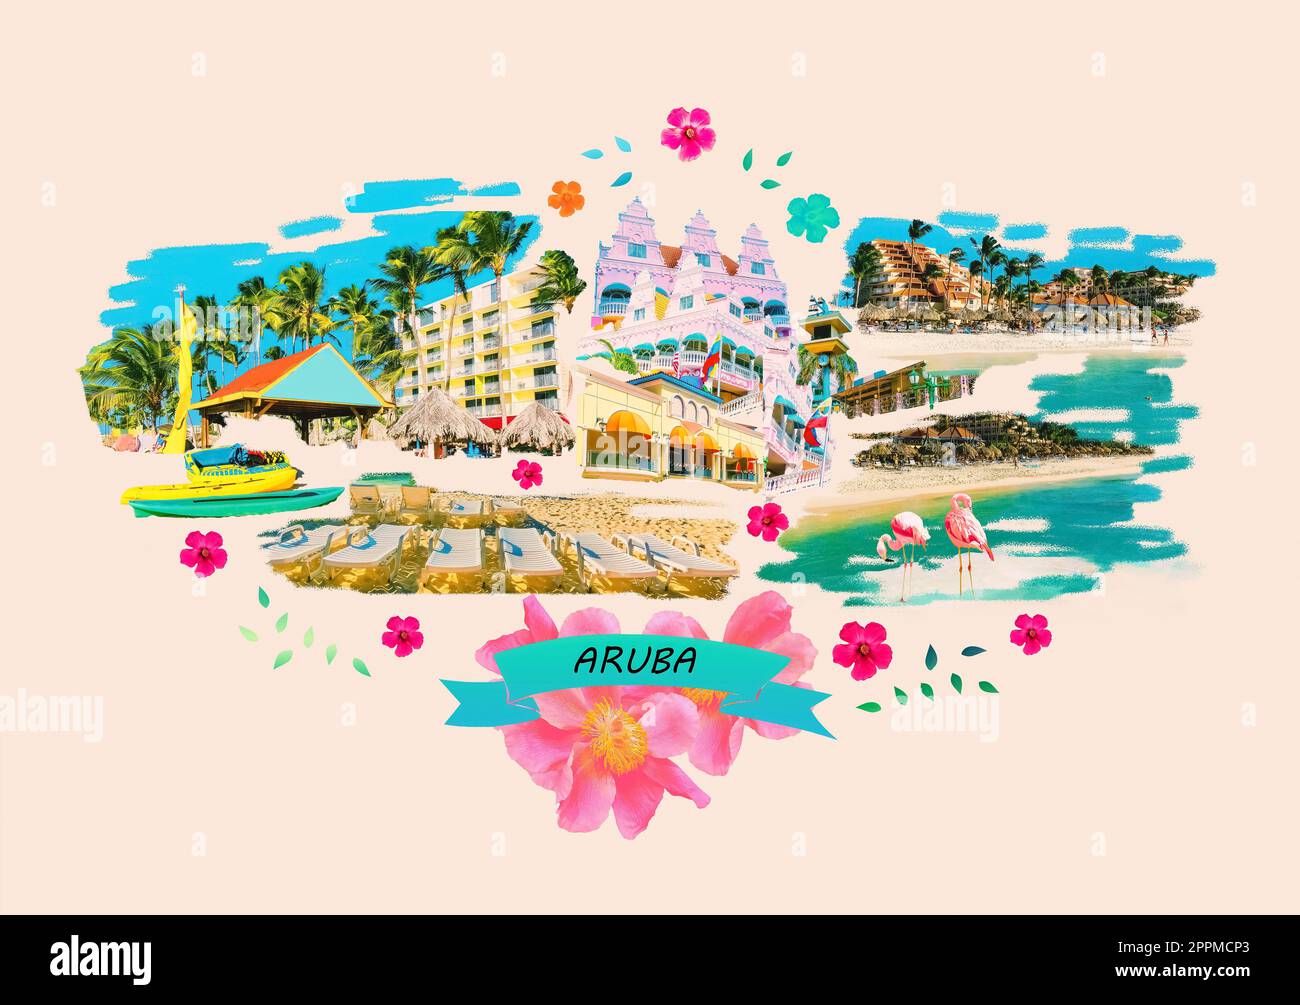 Collage sur Aruba - province néerlandaise Oranjestad - Belle île des Caraïbes. Design artistique Banque D'Images